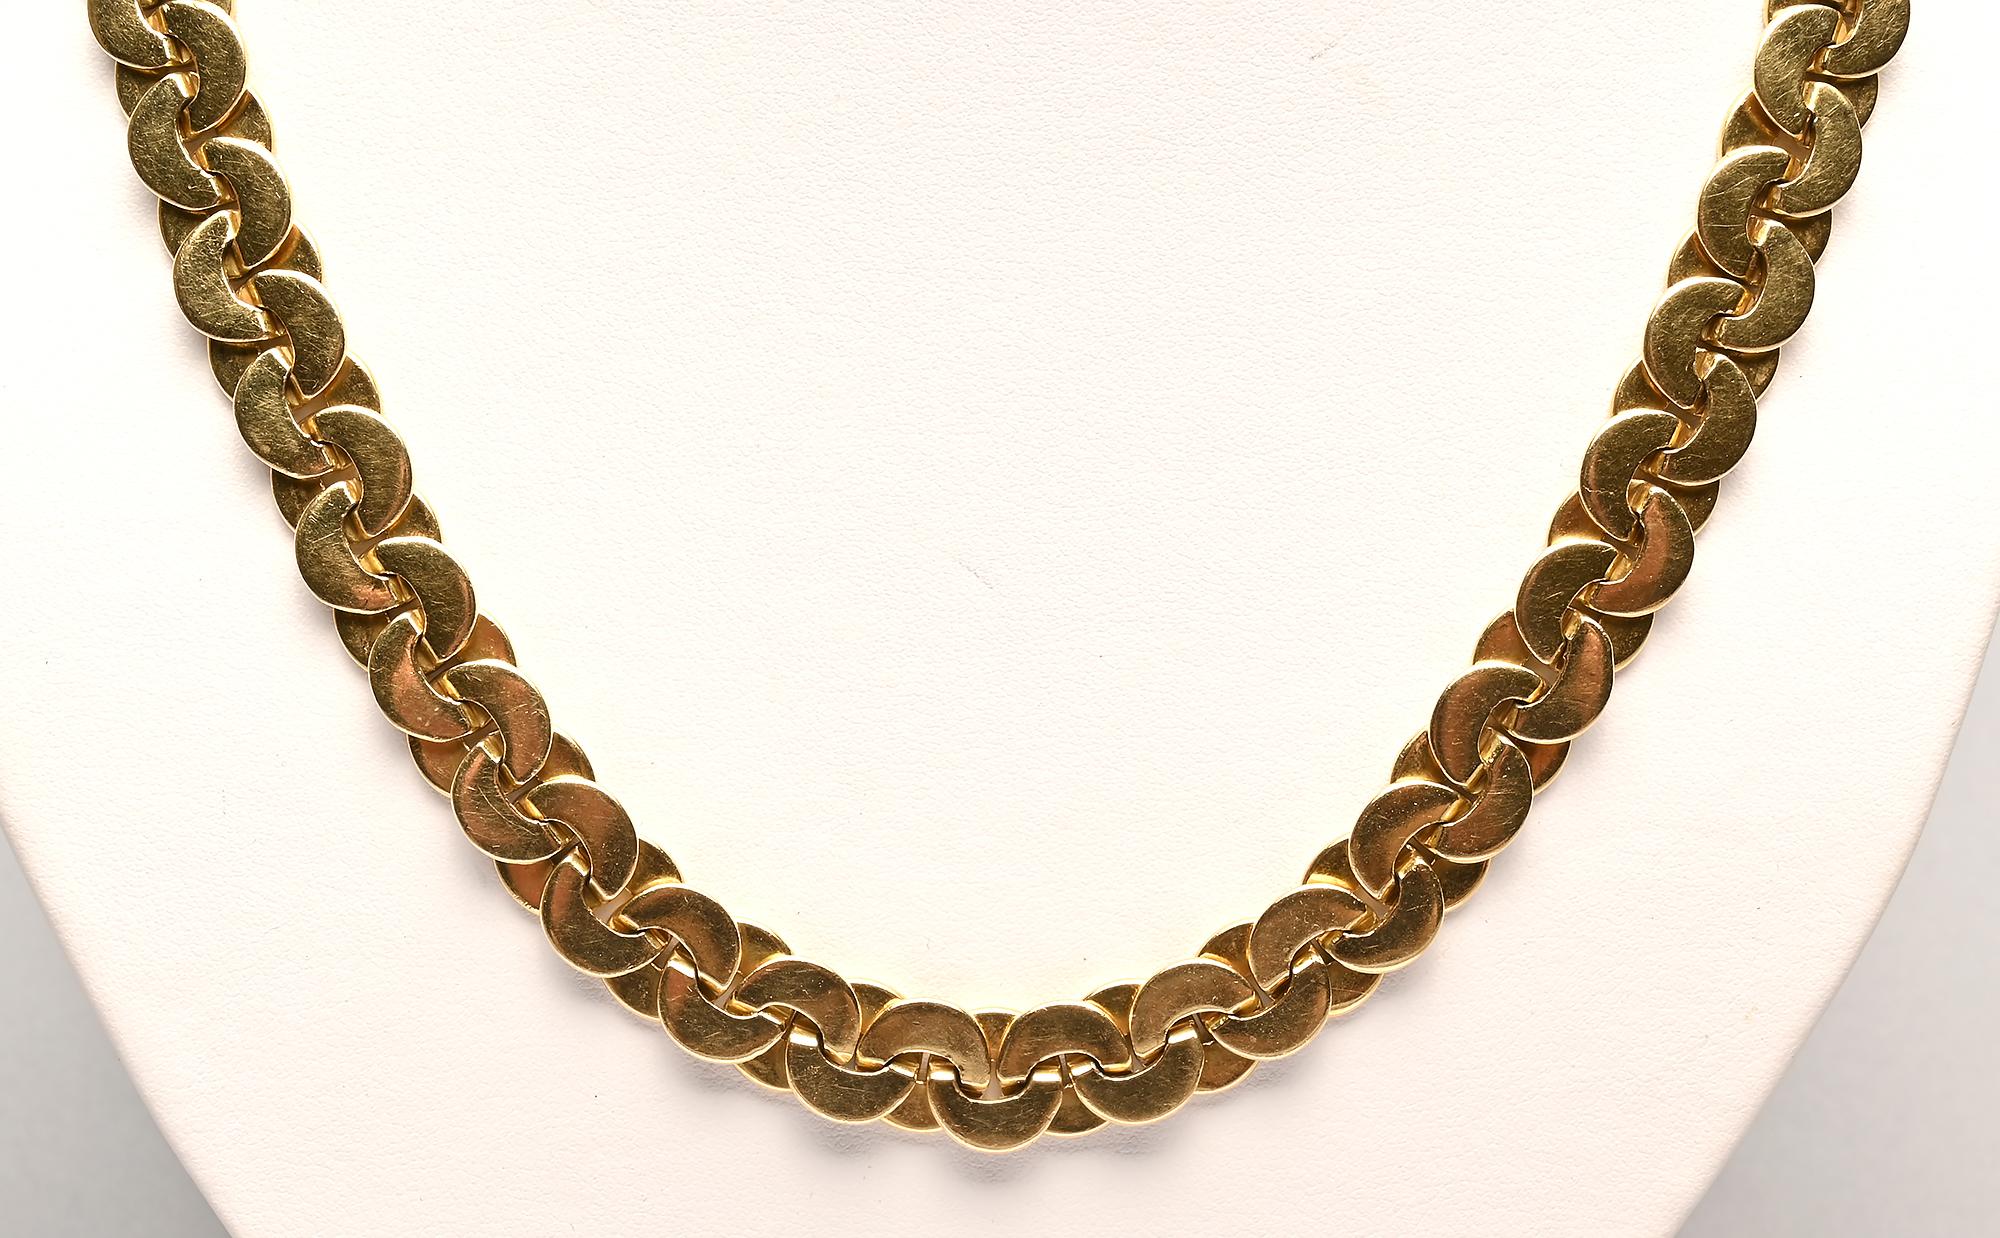 Long collier à chaîne en or 18 carats de Buccellati avec une finition différente de chaque côté. Une face est brillante et l'autre a une finition légèrement texturée faite de lignes droites extrêmement fines. Les cercles qui se chevauchent sont